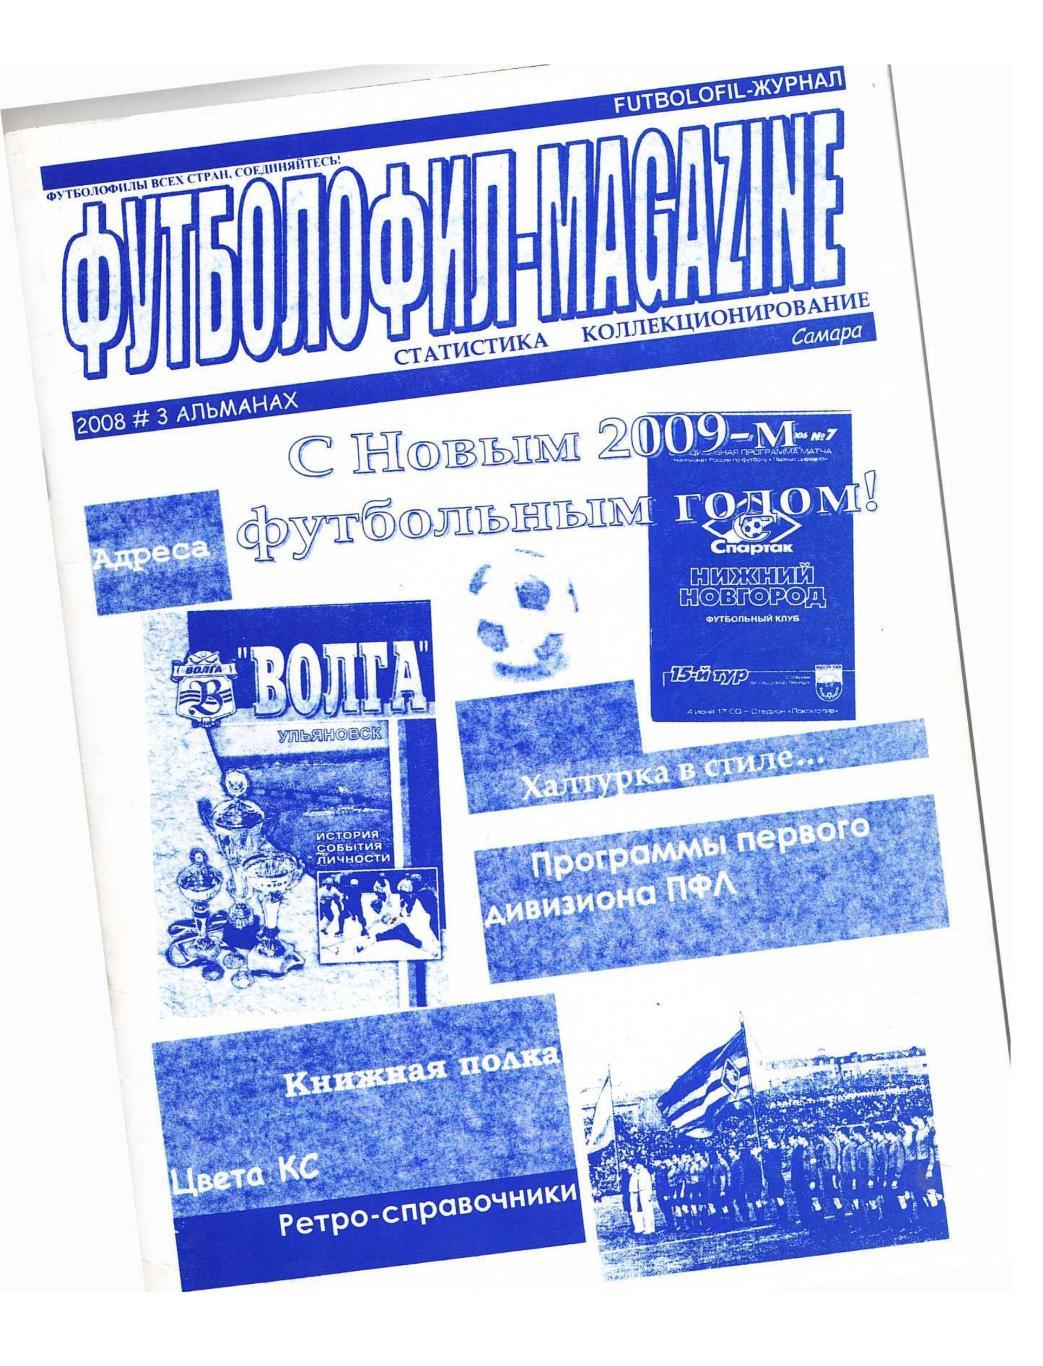 Футболофил-Magazine. 2008, № 3. – Самара.